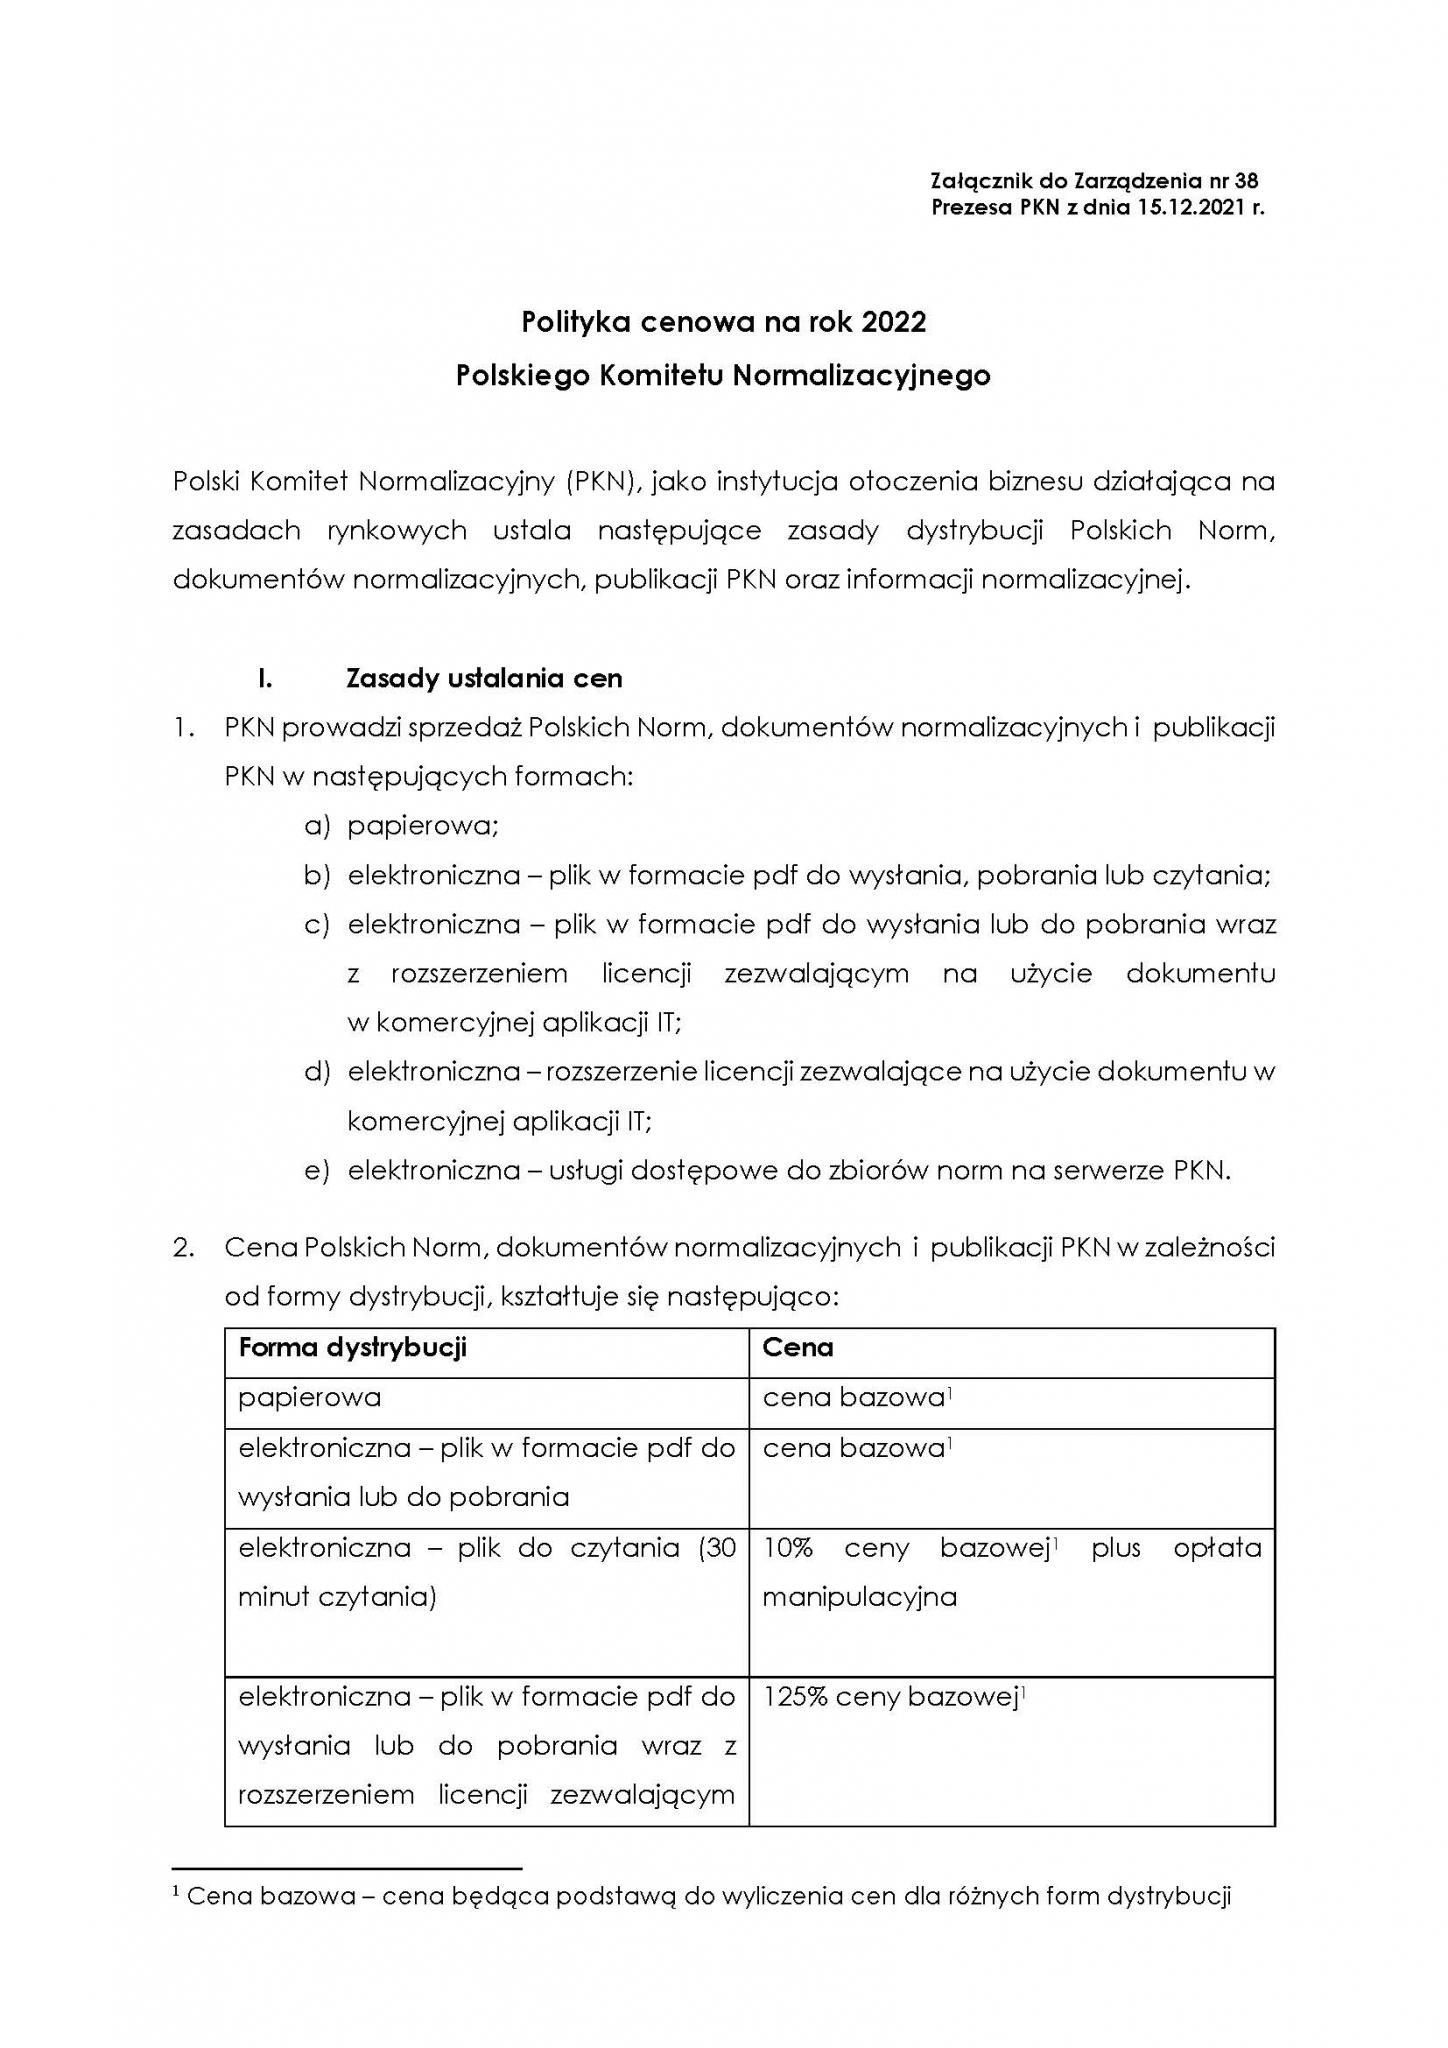 Print screen pierwszej strony dokumentu Polityka cenowa PKN 2021, otwierający całość tego dokumentu w formie PDF